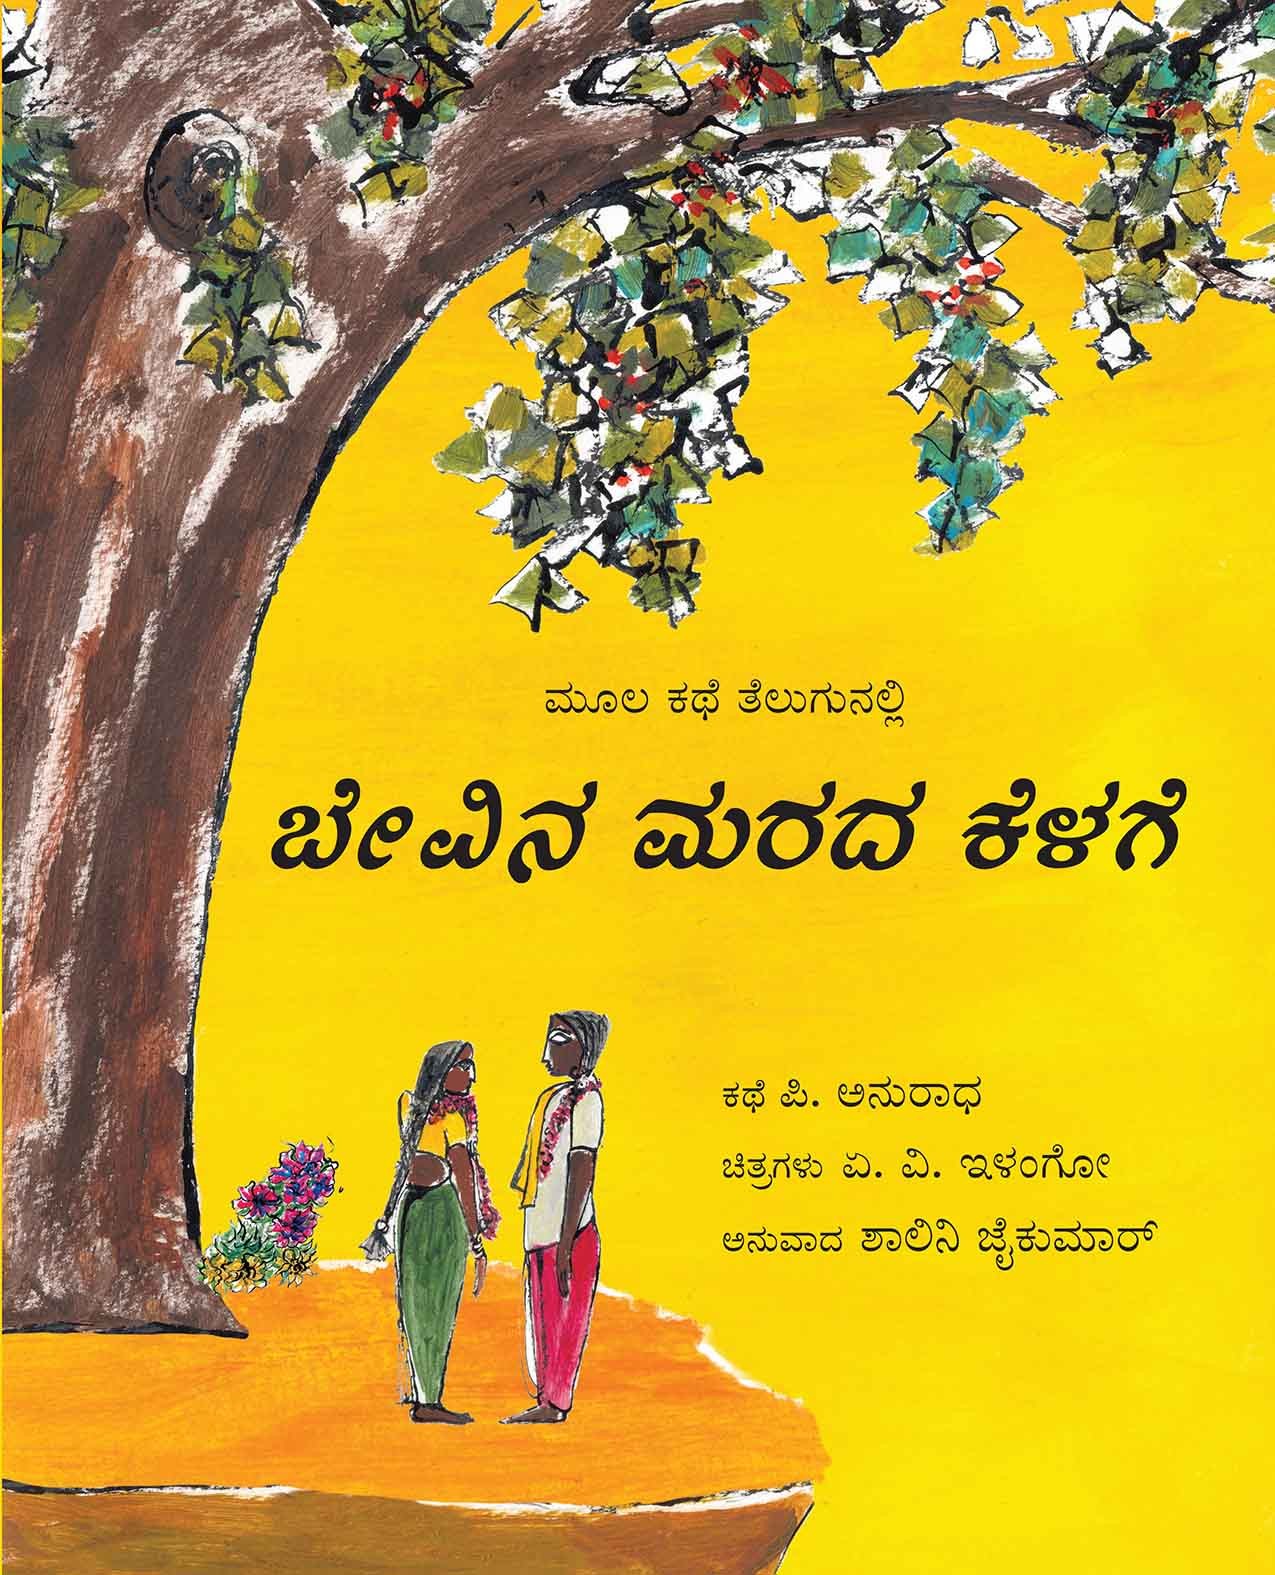 Under The Neem Tree/Beyvina Marada Kelage (Kannada)